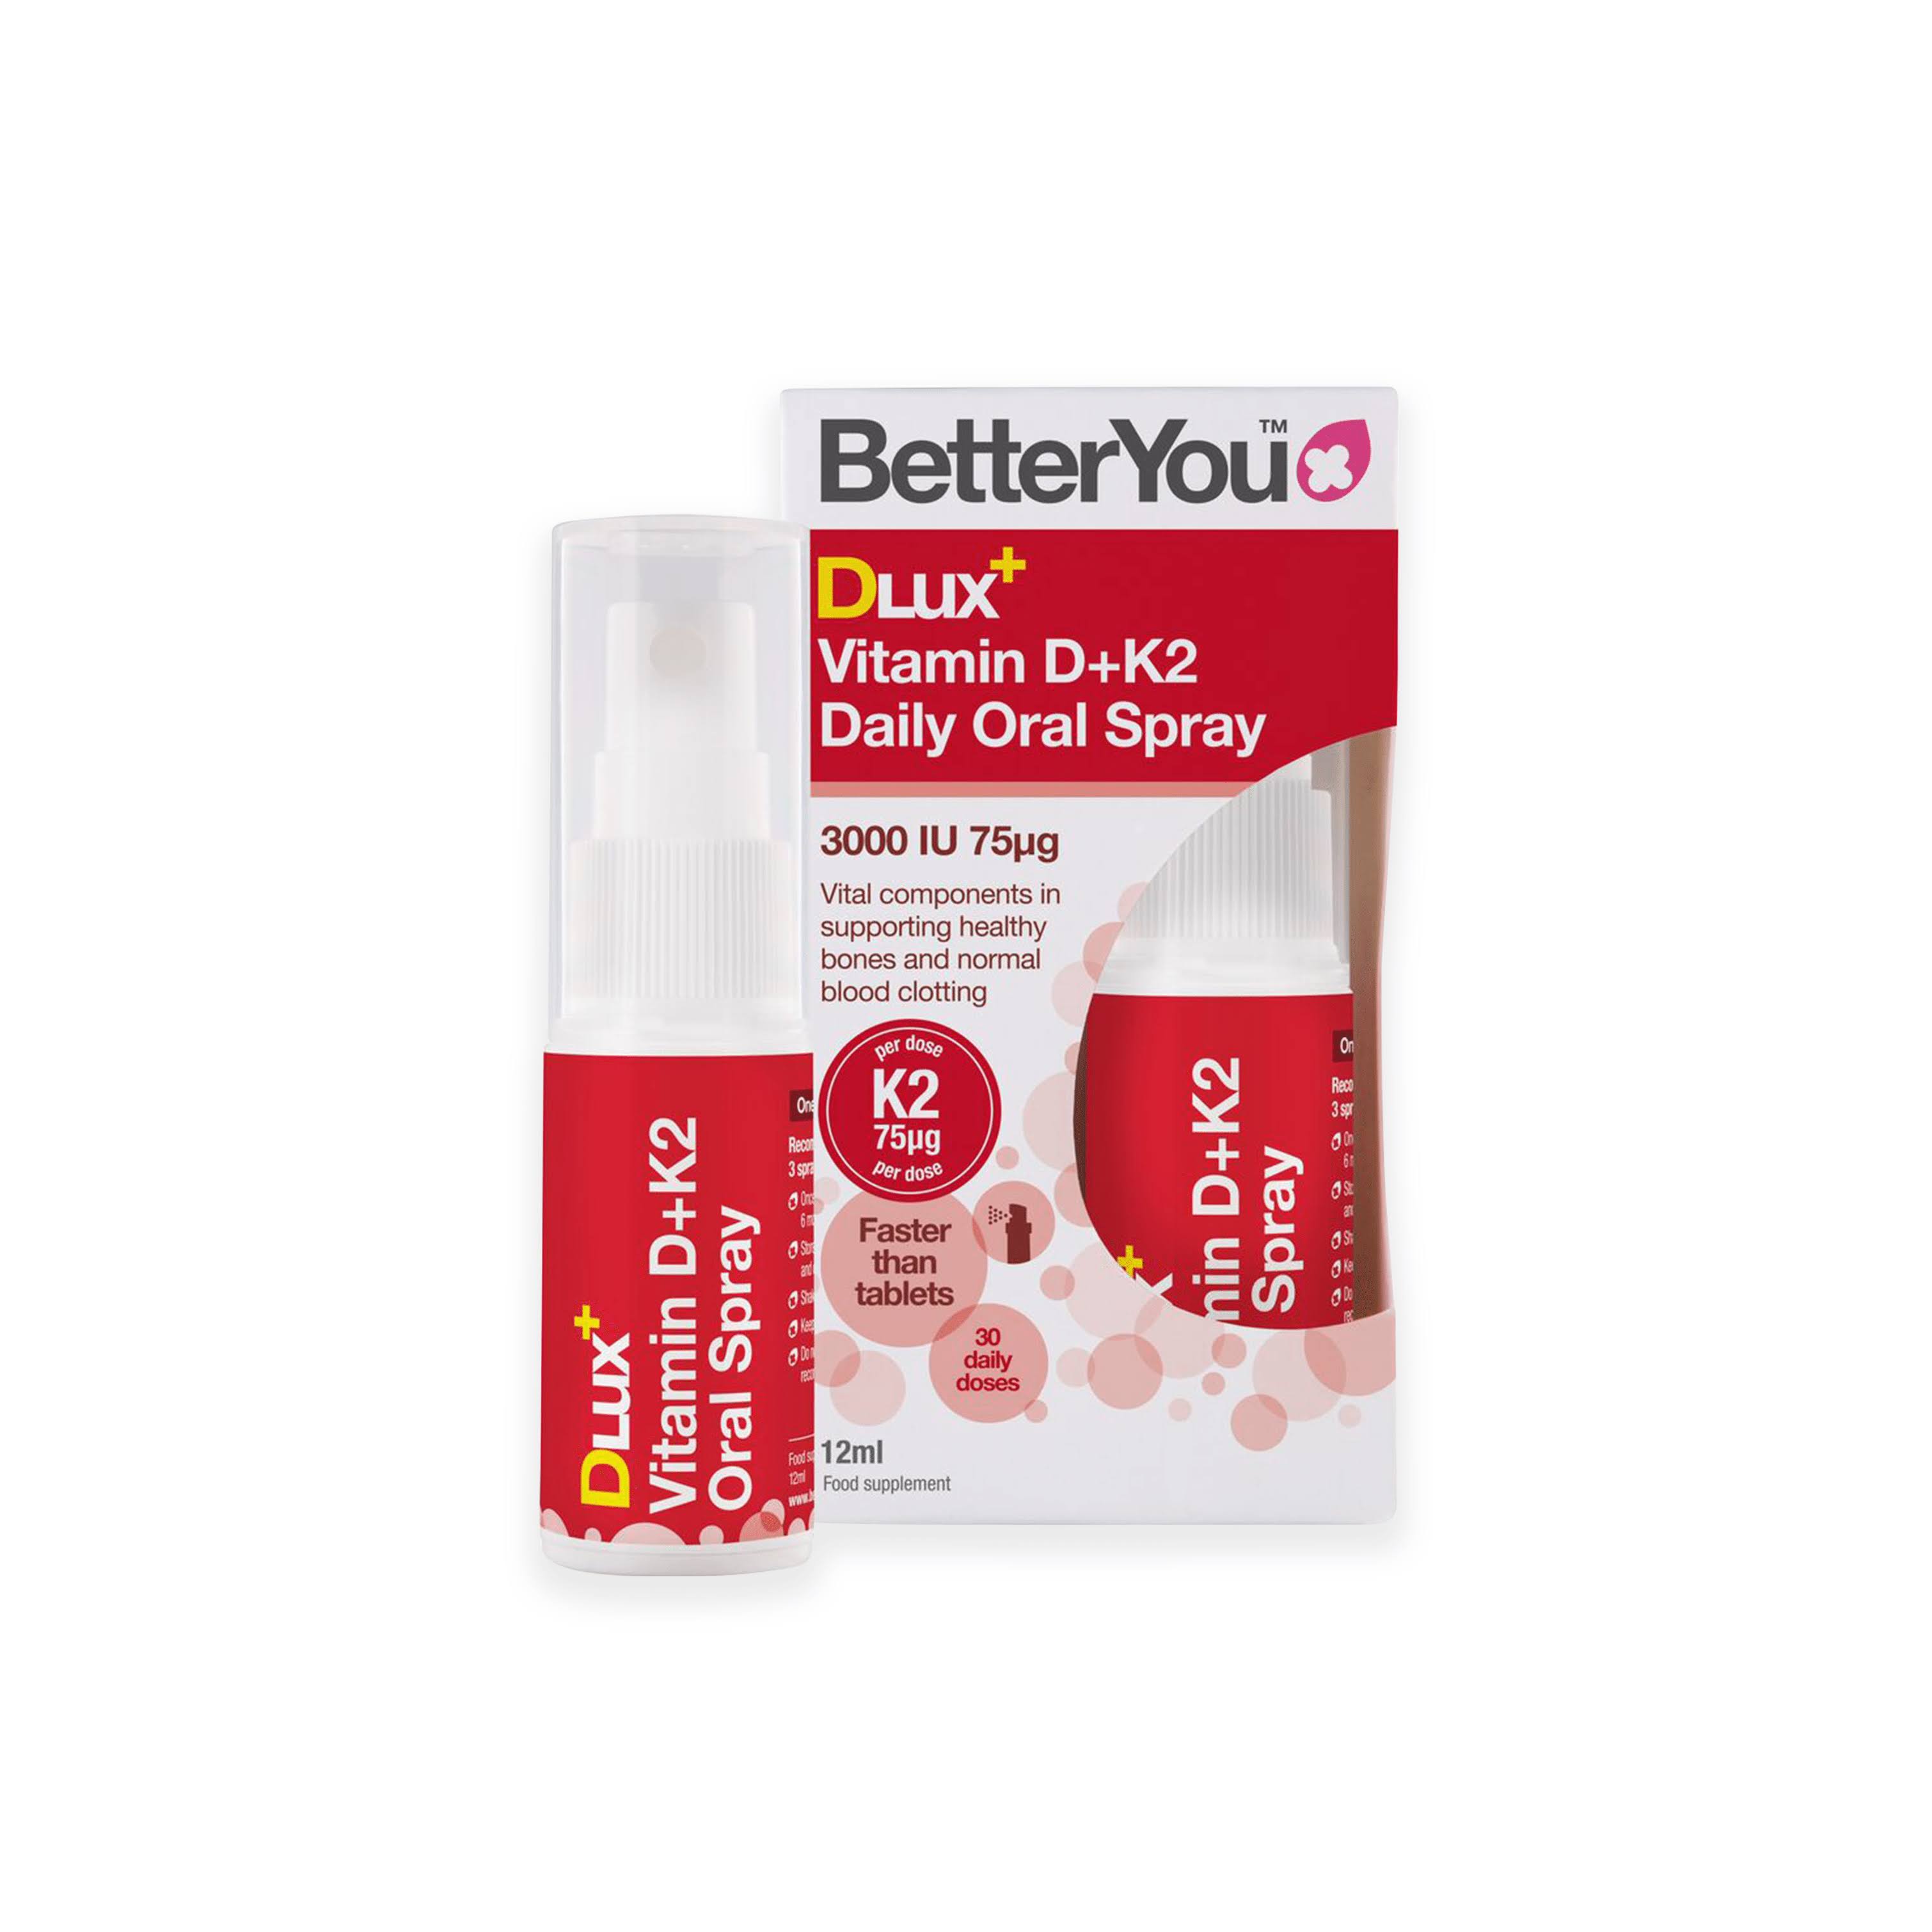 BetterYou DLux+ Vitamin D+K2 Daily Oral Spray - 12 ml.